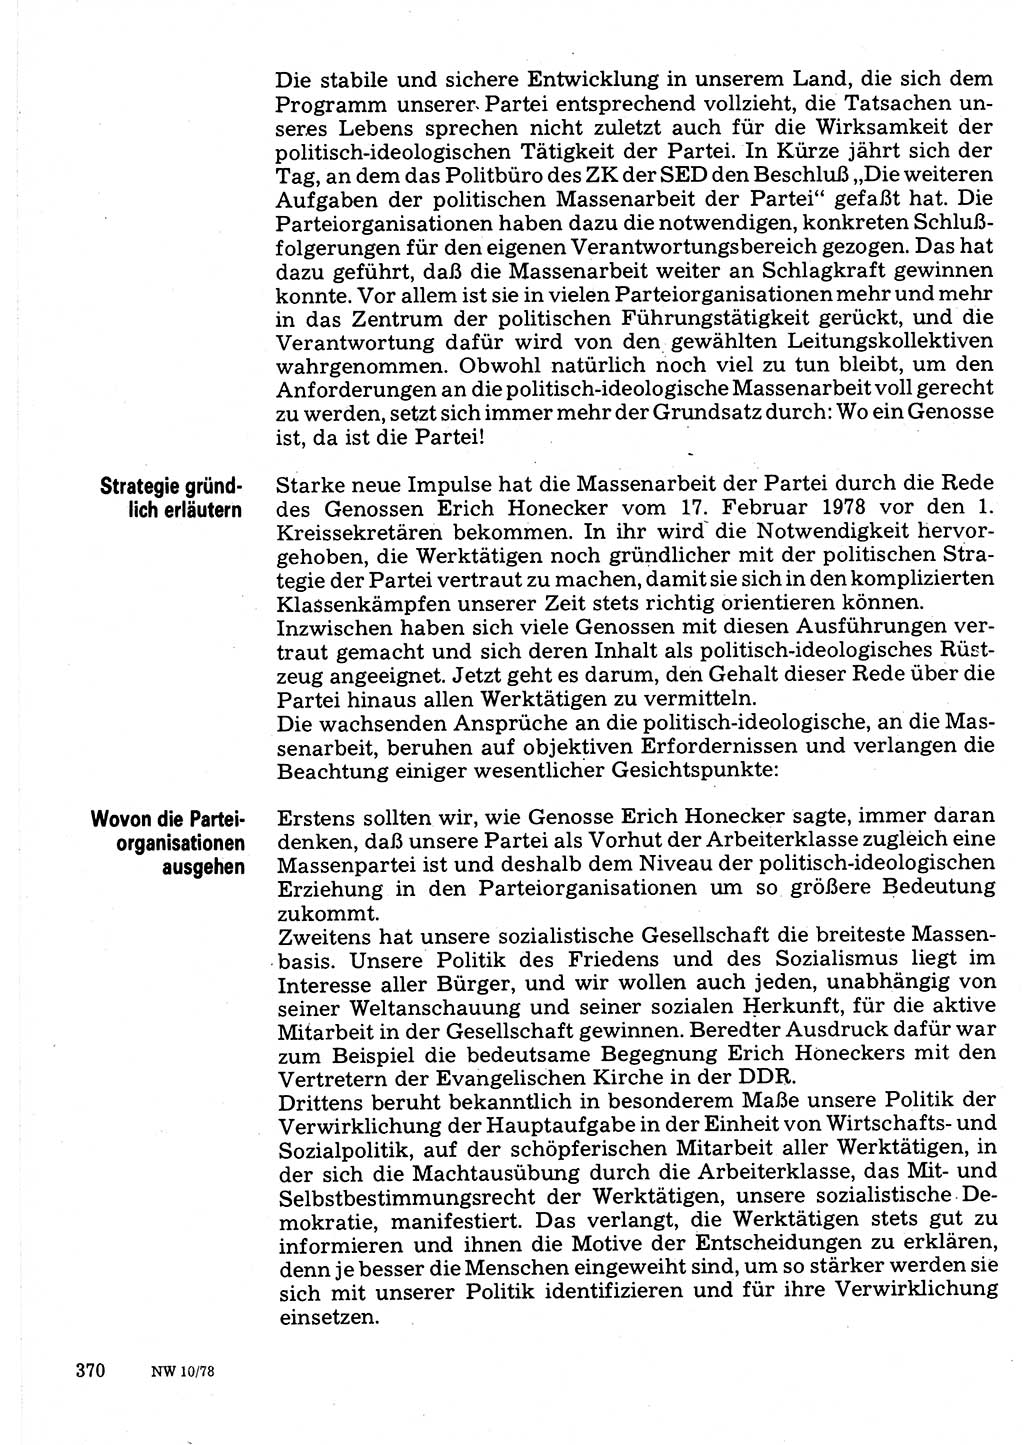 Neuer Weg (NW), Organ des Zentralkomitees (ZK) der SED (Sozialistische Einheitspartei Deutschlands) für Fragen des Parteilebens, 33. Jahrgang [Deutsche Demokratische Republik (DDR)] 1978, Seite 370 (NW ZK SED DDR 1978, S. 370)